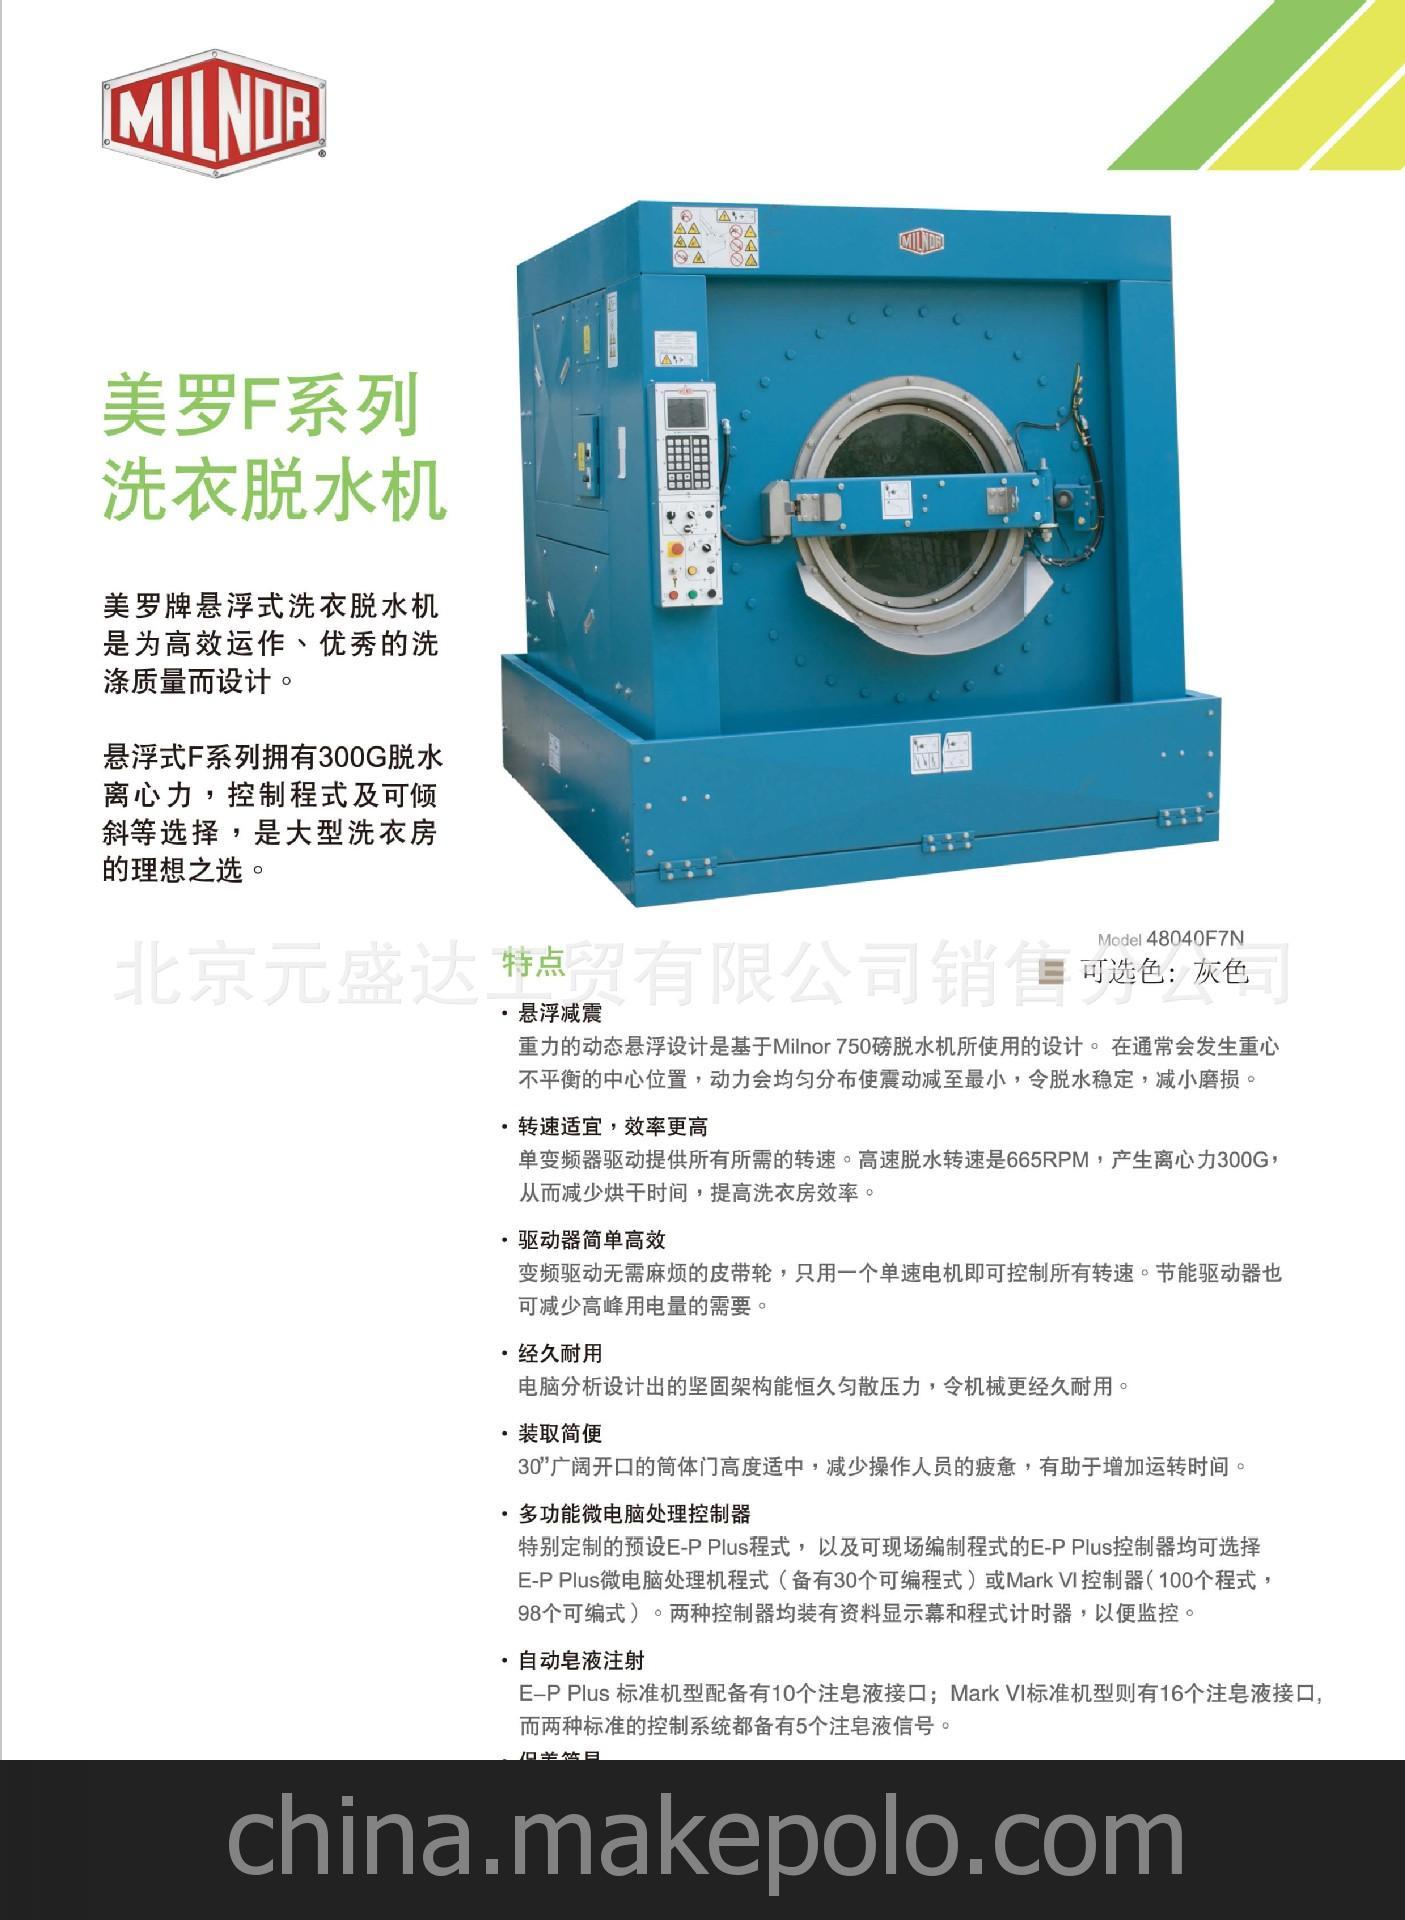 北京萬達元盛達公司賣給中國大飯店美國MILNOR美羅36026水洗機